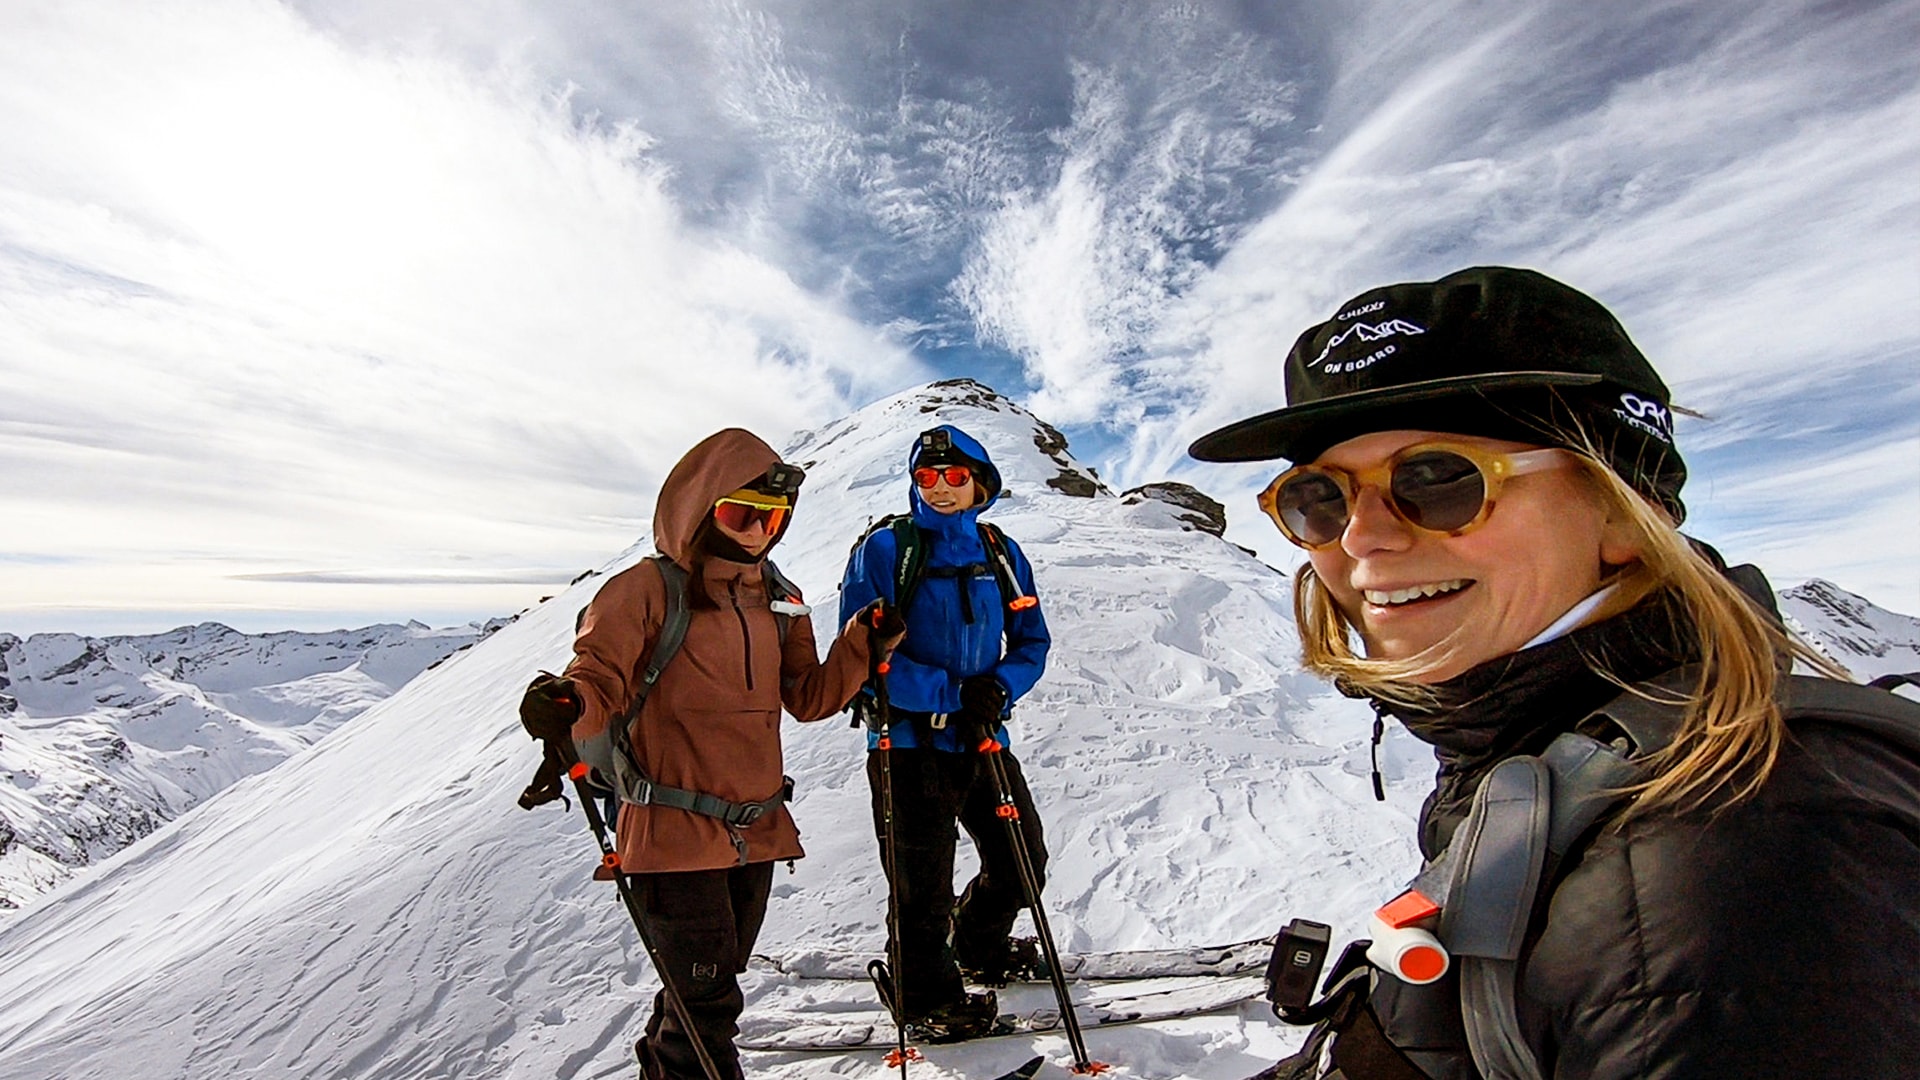 Die aufregendsten Ski-Touren der Schweiz - Teil 1